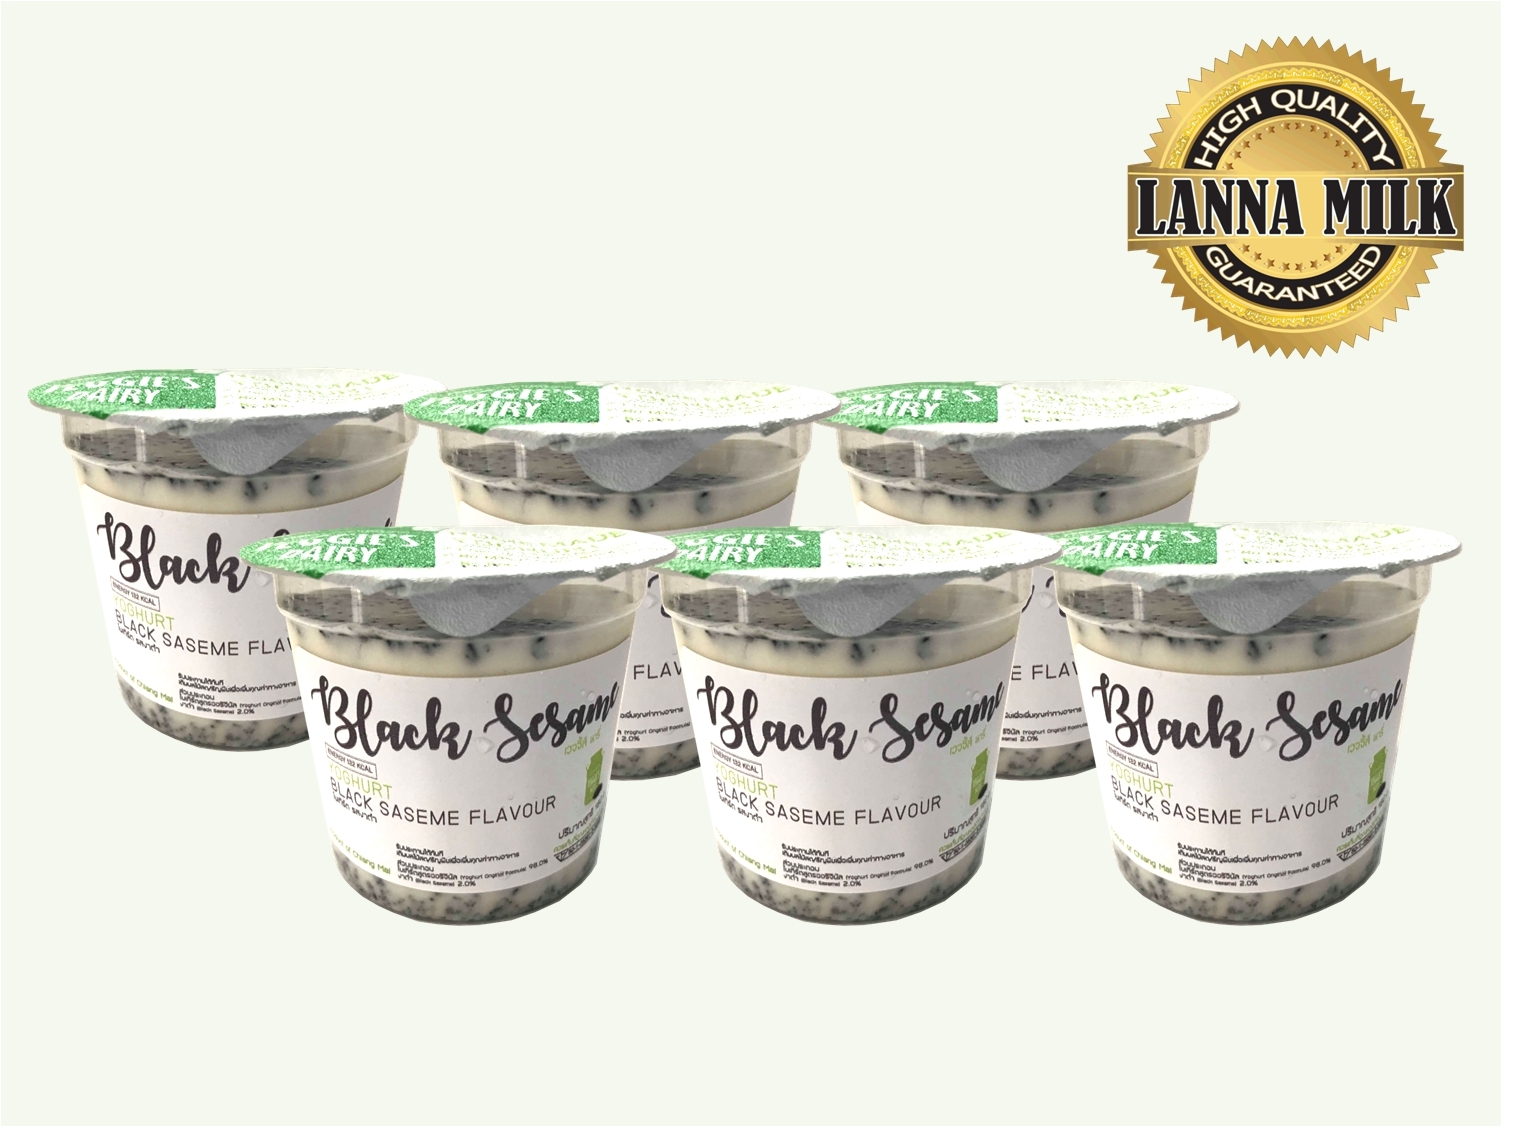 โยเกิร์ตโฮมเมด เวจจี้ส์แดรี่ 150กรัม แพค6ถ้วย รสงาดำ Homemade Yoghurt Veggie’s Dairy Black Sesame Flavor (150 g) 6 cups